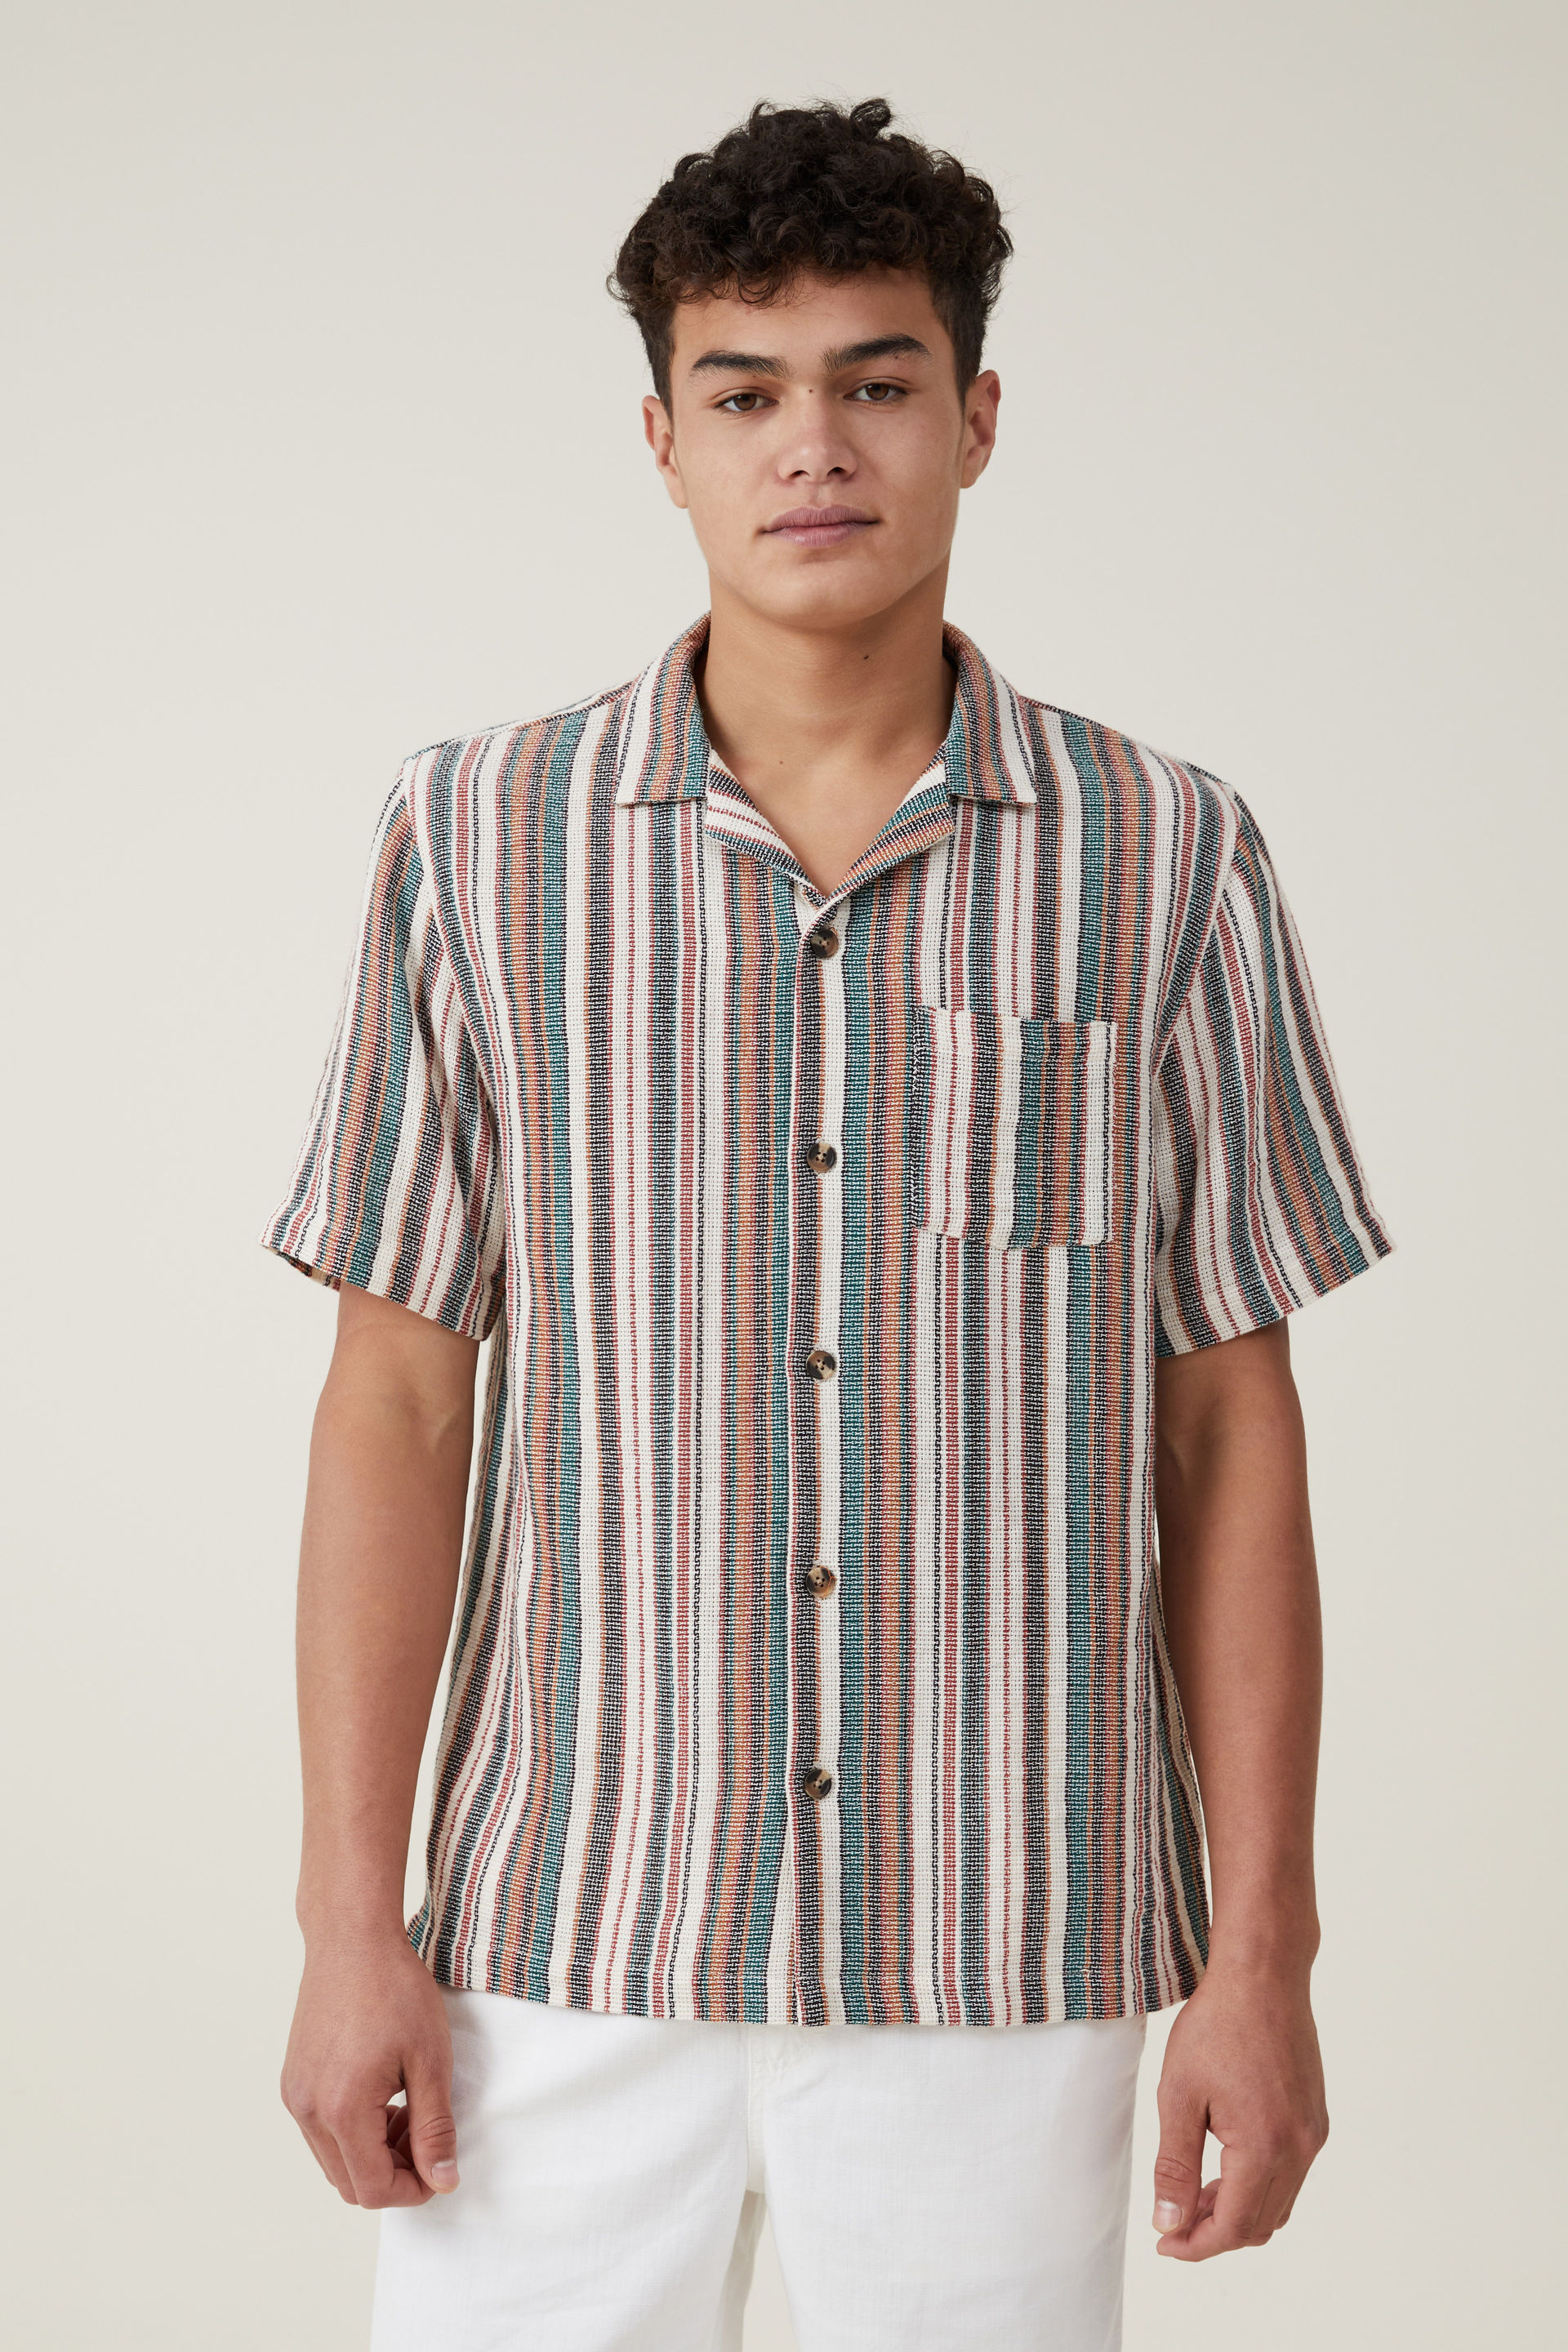 Cotton On Men - Palma Short Sleeve Shirt - Midnight multi stripe